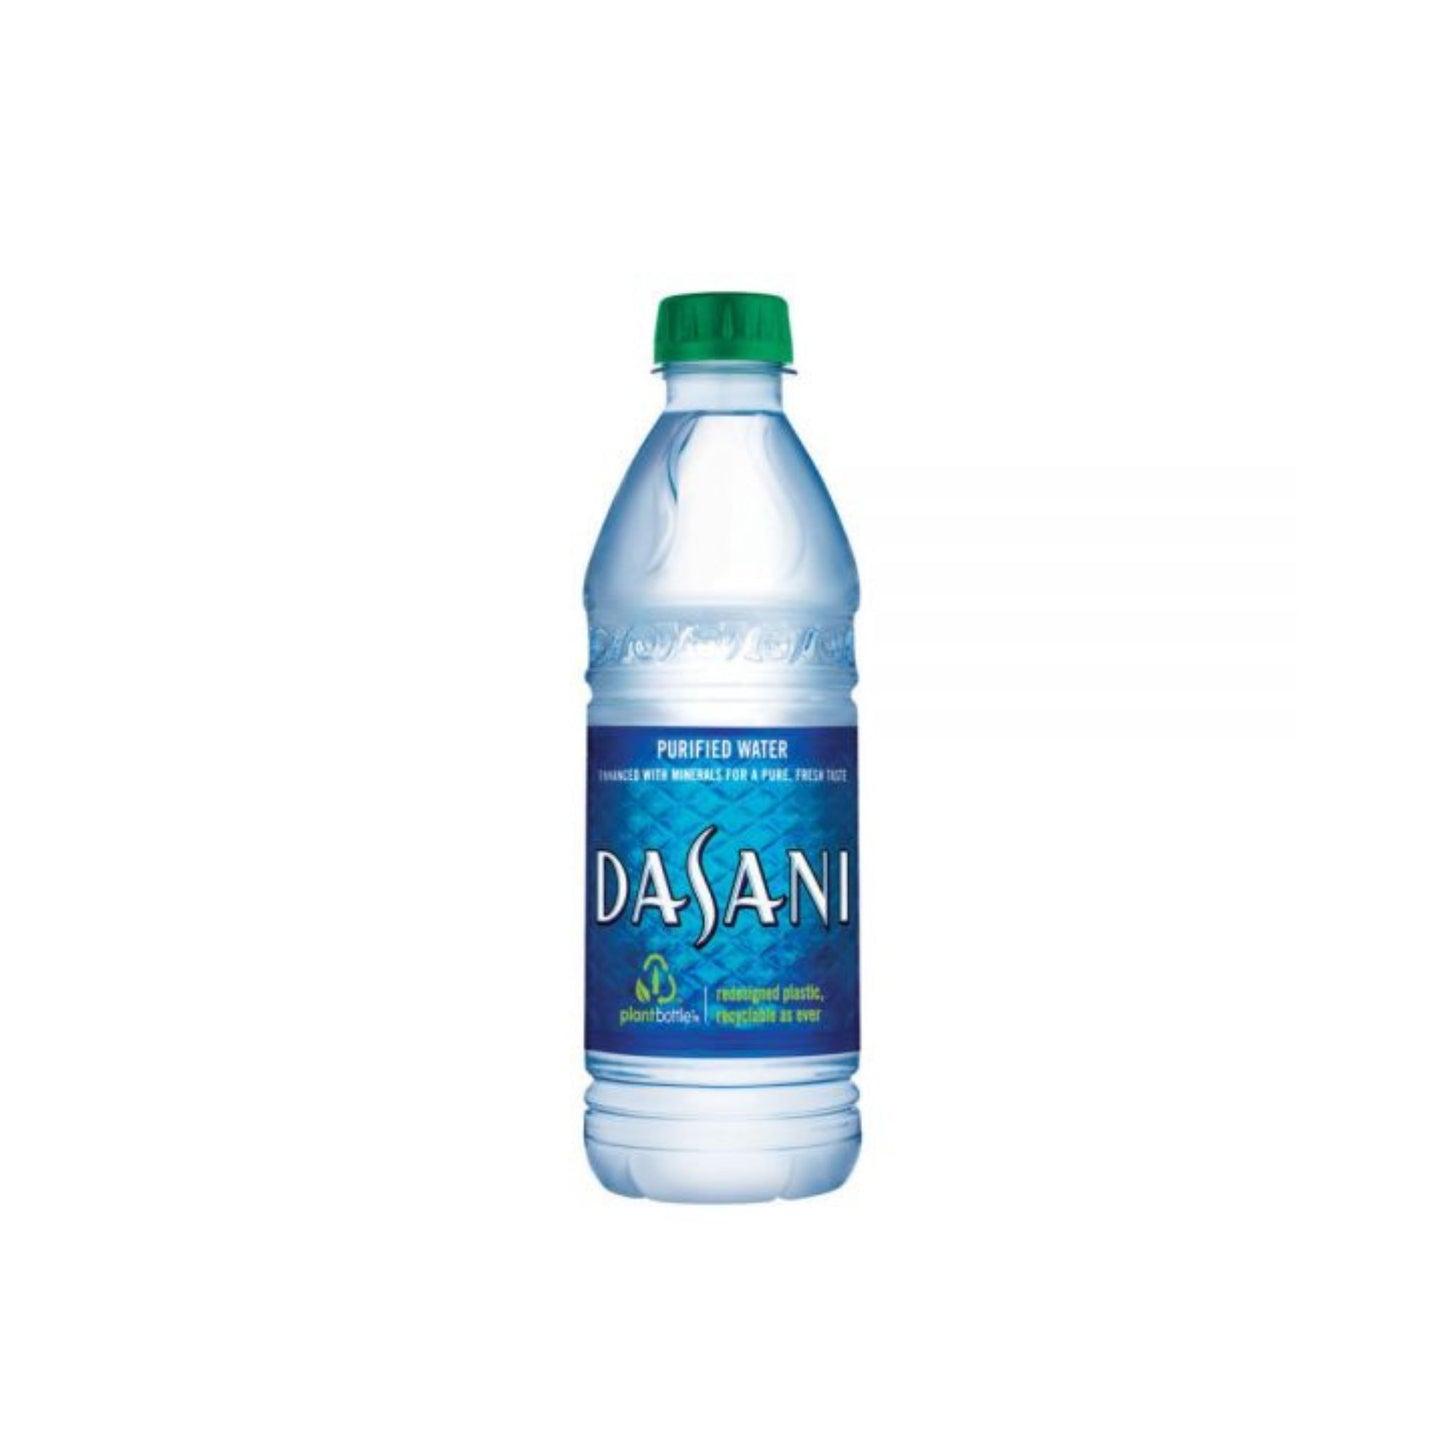 Dasani Purified Water 16.9 Oz. Pack Of 24 Bottles